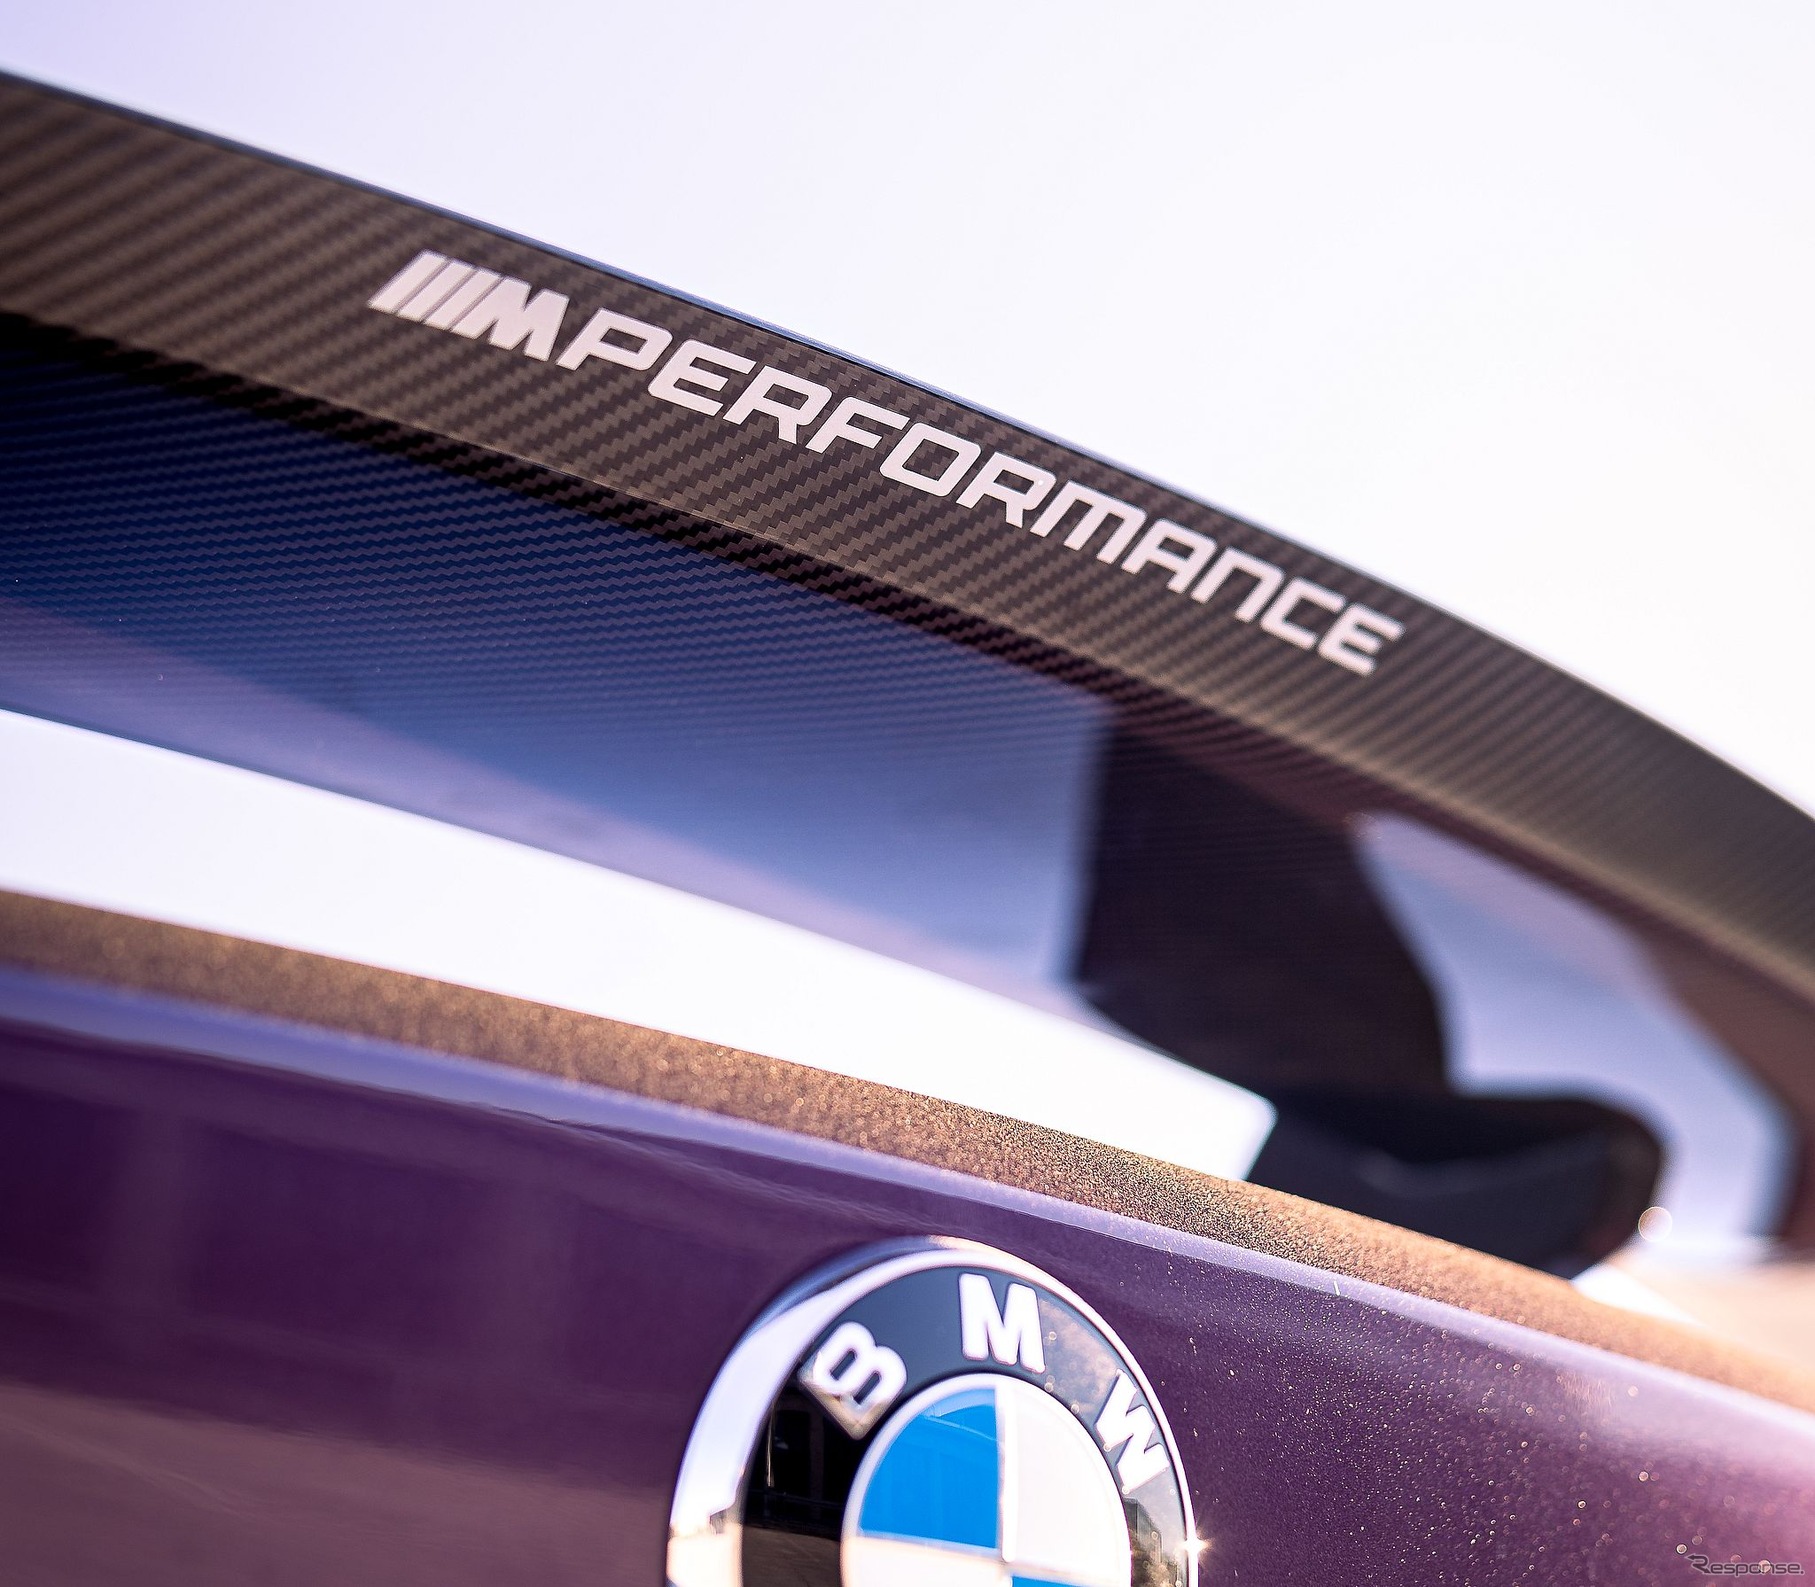 BMW M4 コンペティション・クーペ の「Mパフォーマンスパーツ」装着車